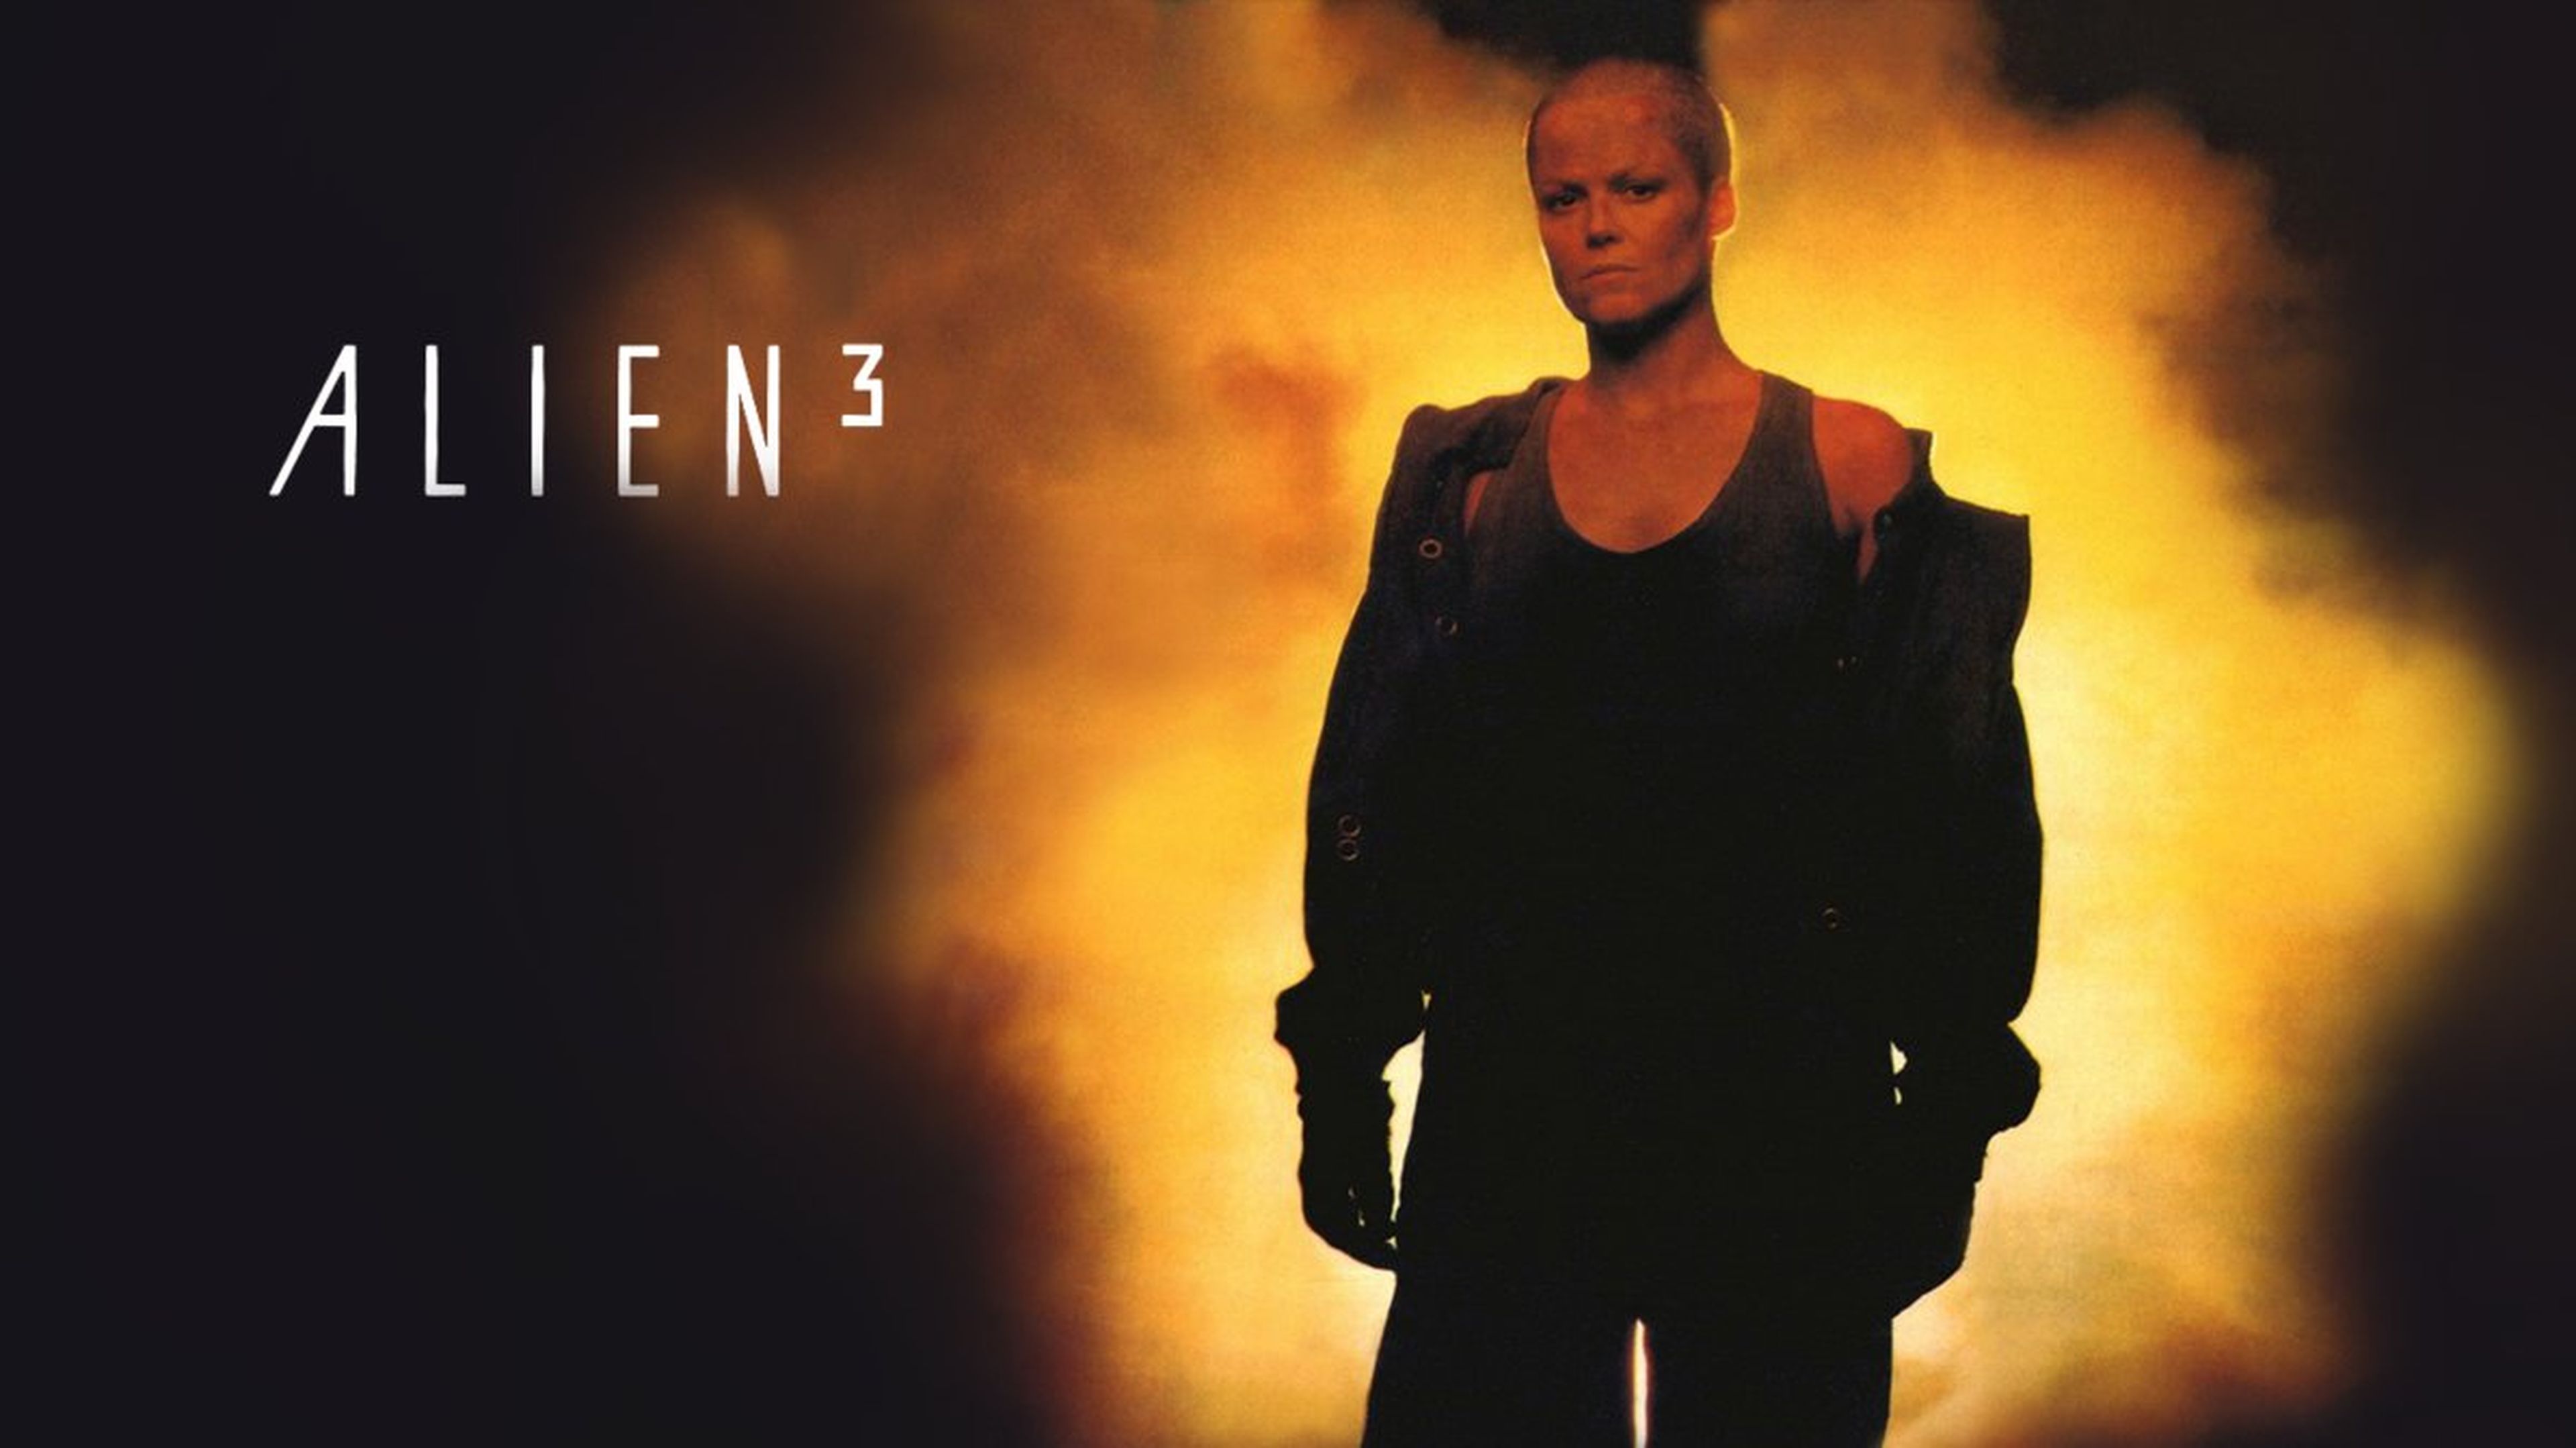 Cine de ciencia ficción: Alien 3